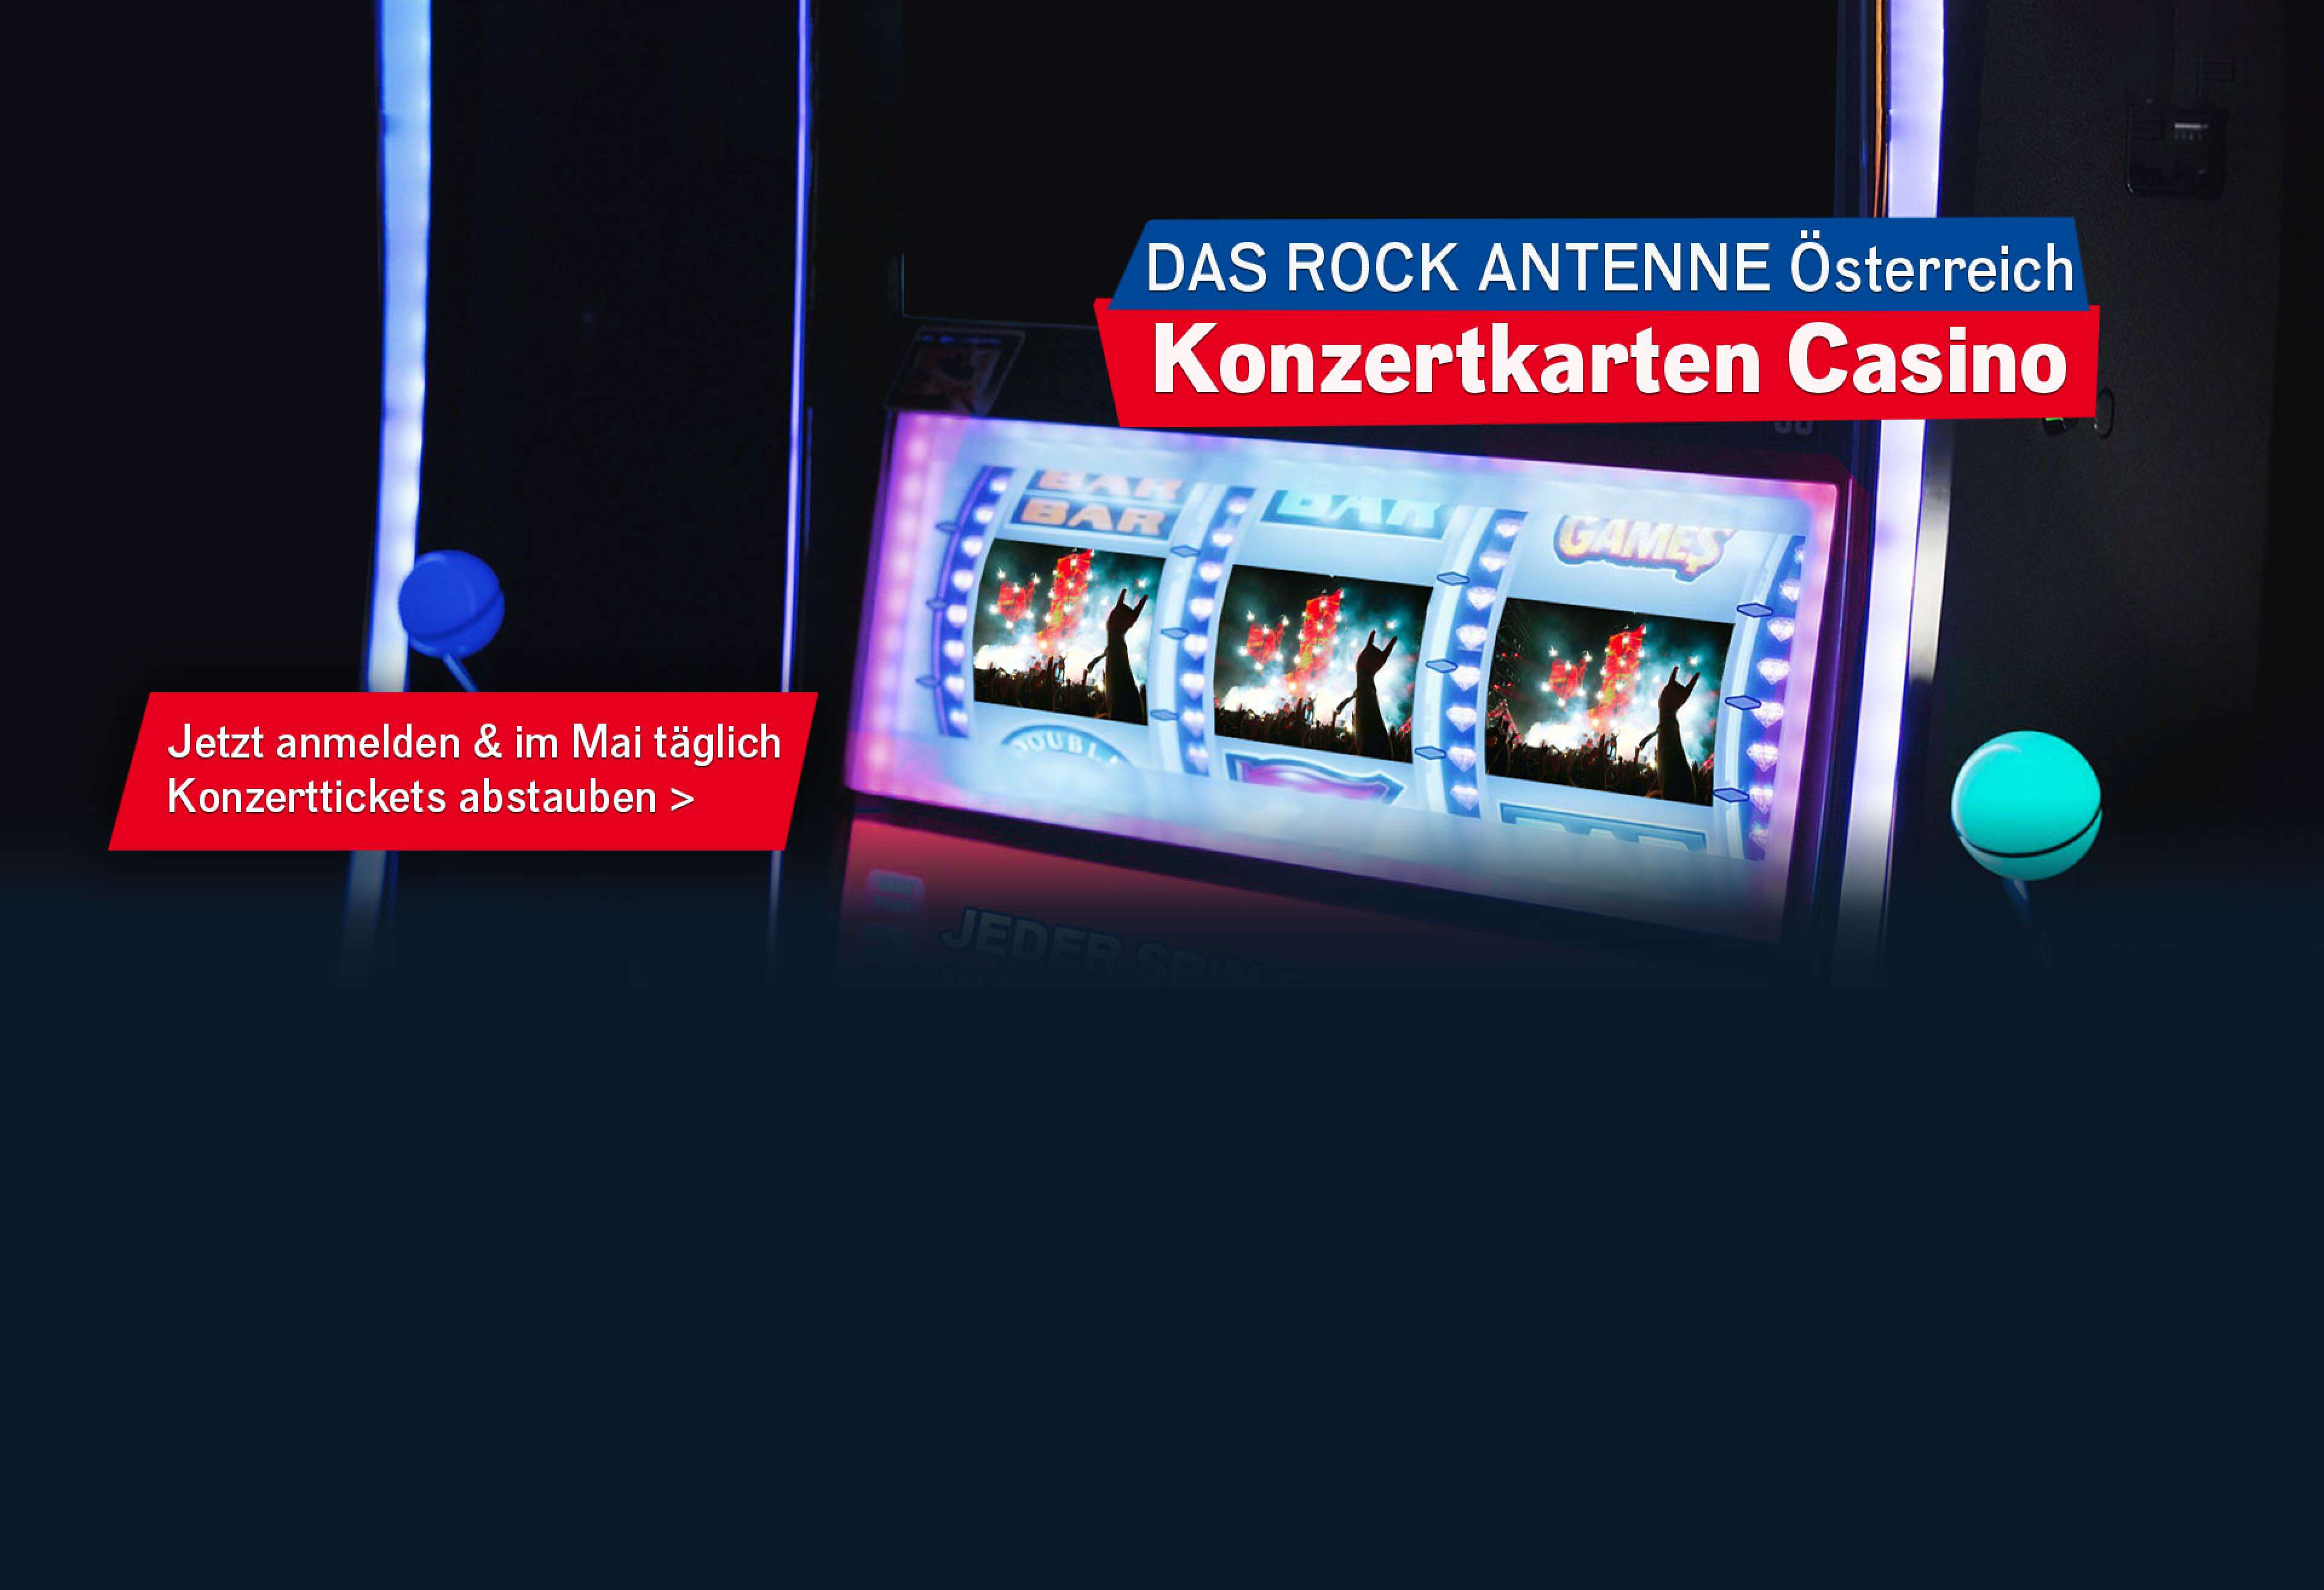 Nahaufnahme des Bildschirms eines Spielautomaten, darauf zu sehen sind drei Fotos von einem Konzert in einer Reihe, dazu der Text: Das ROCK ANTENNE Österreich Konzertkarten Casino -jetzt mitmachen und im Mai täglich Konzertkarten abstauben